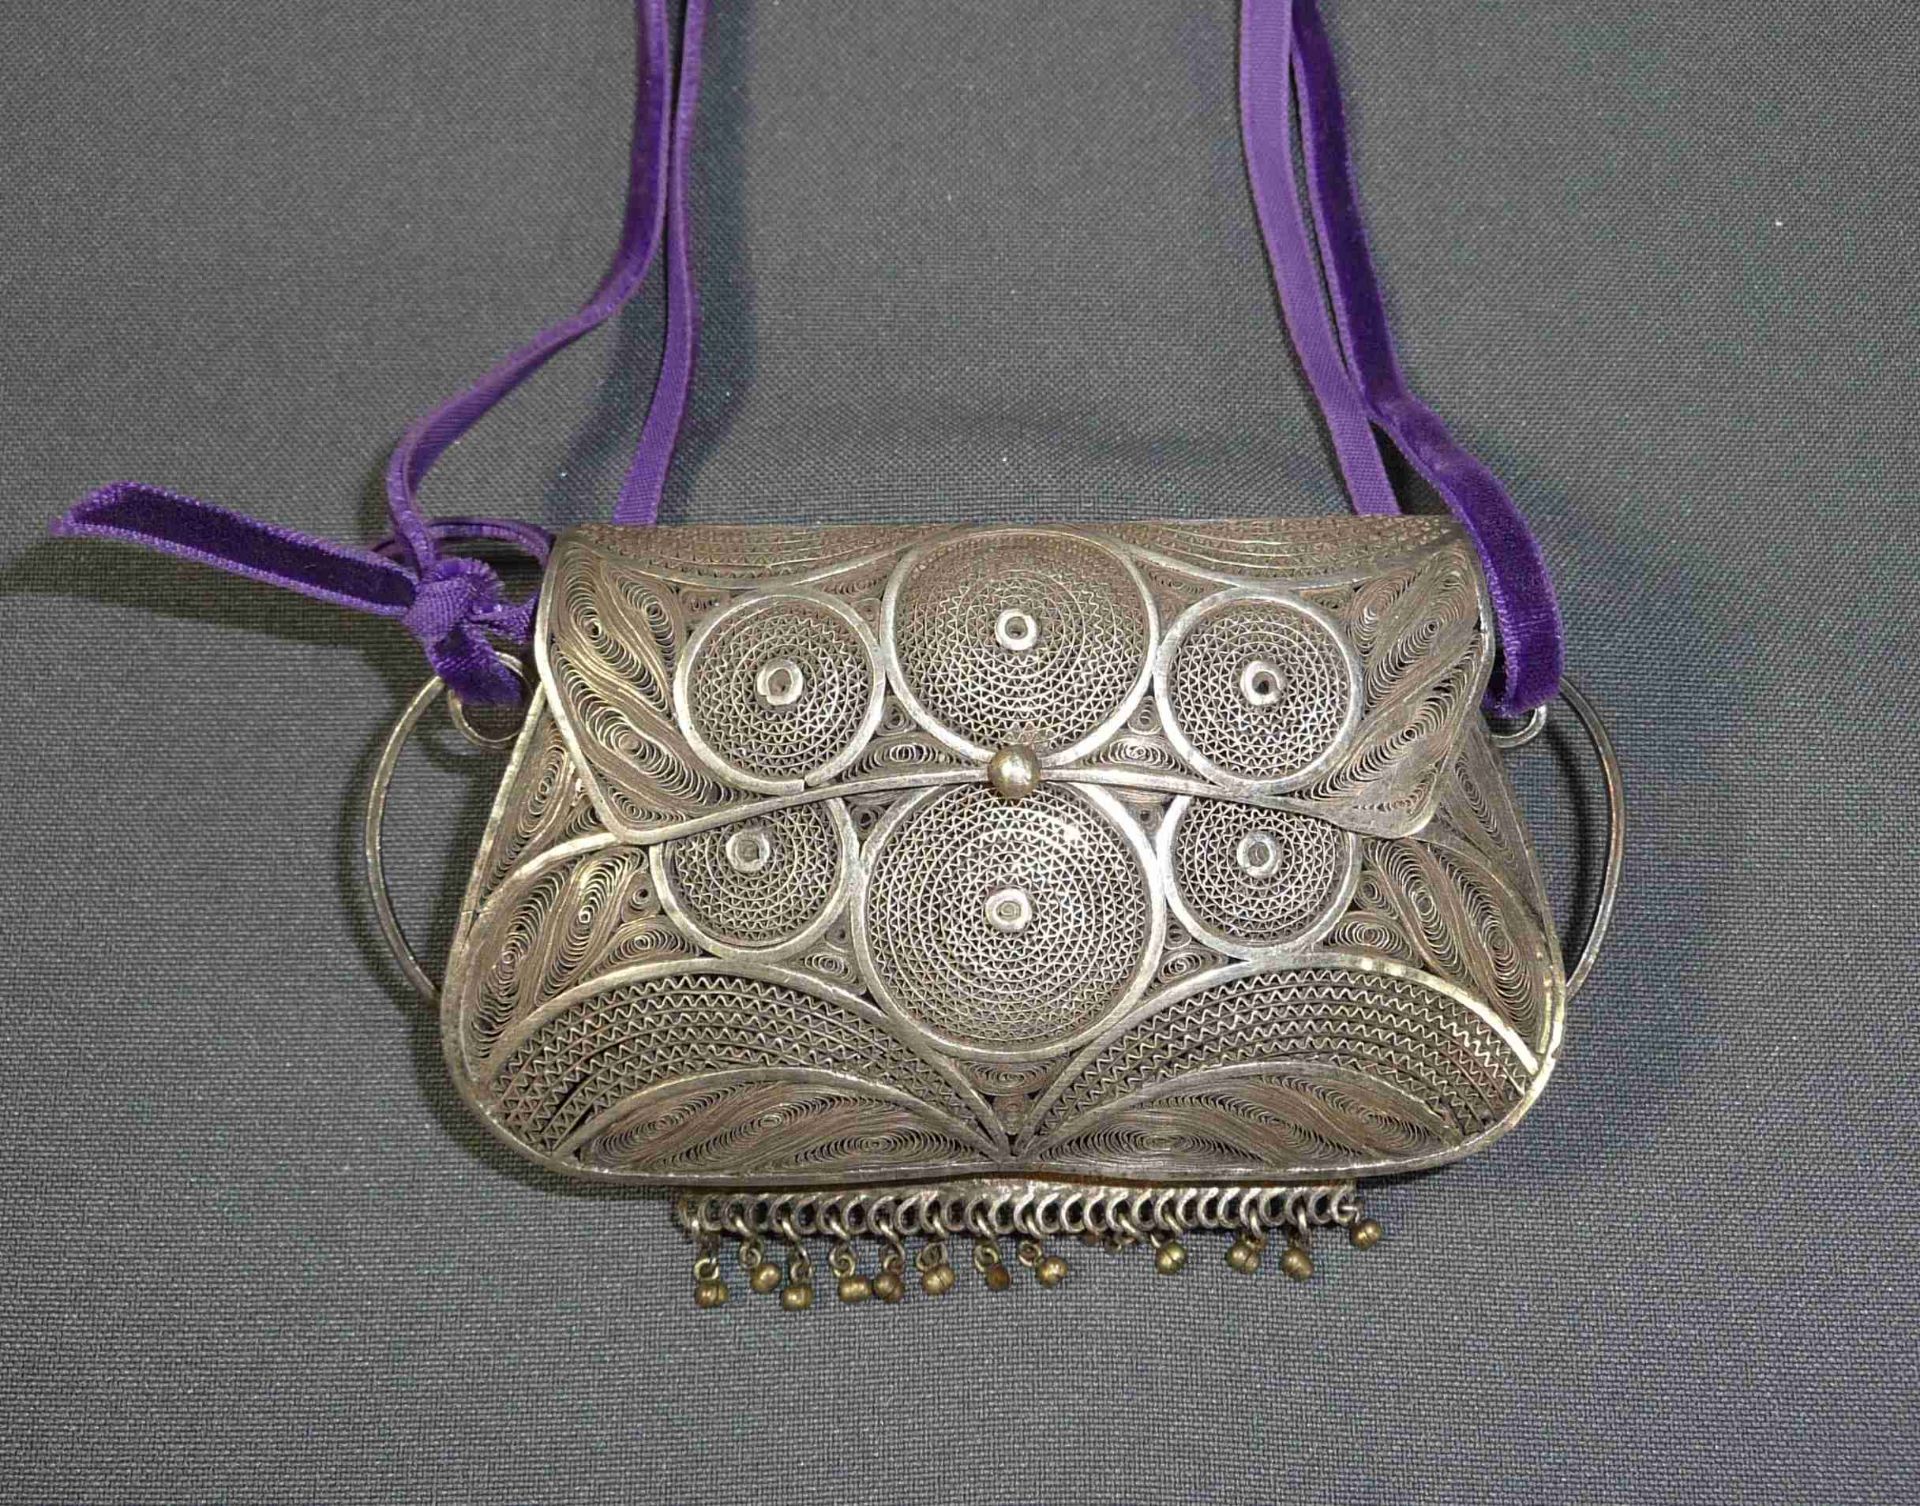 Silberfiligran-Börse Wohl Russland, um 1860 In Form einer Handtasche mit zwei seitlichen Bügeln, die